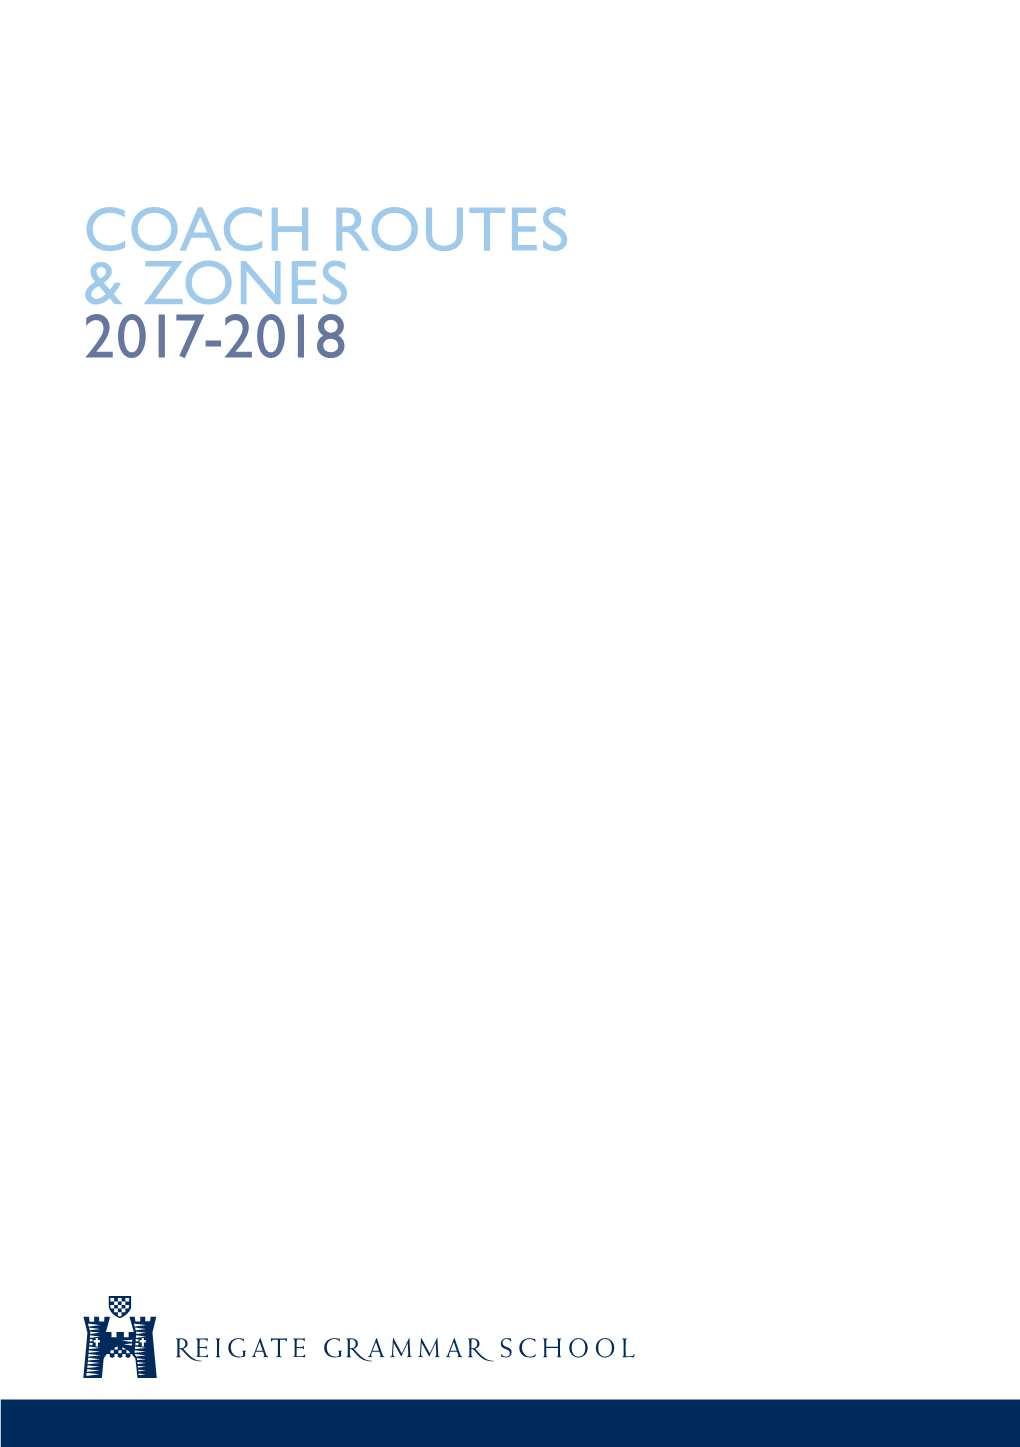 Coach Routes & Zones 2017